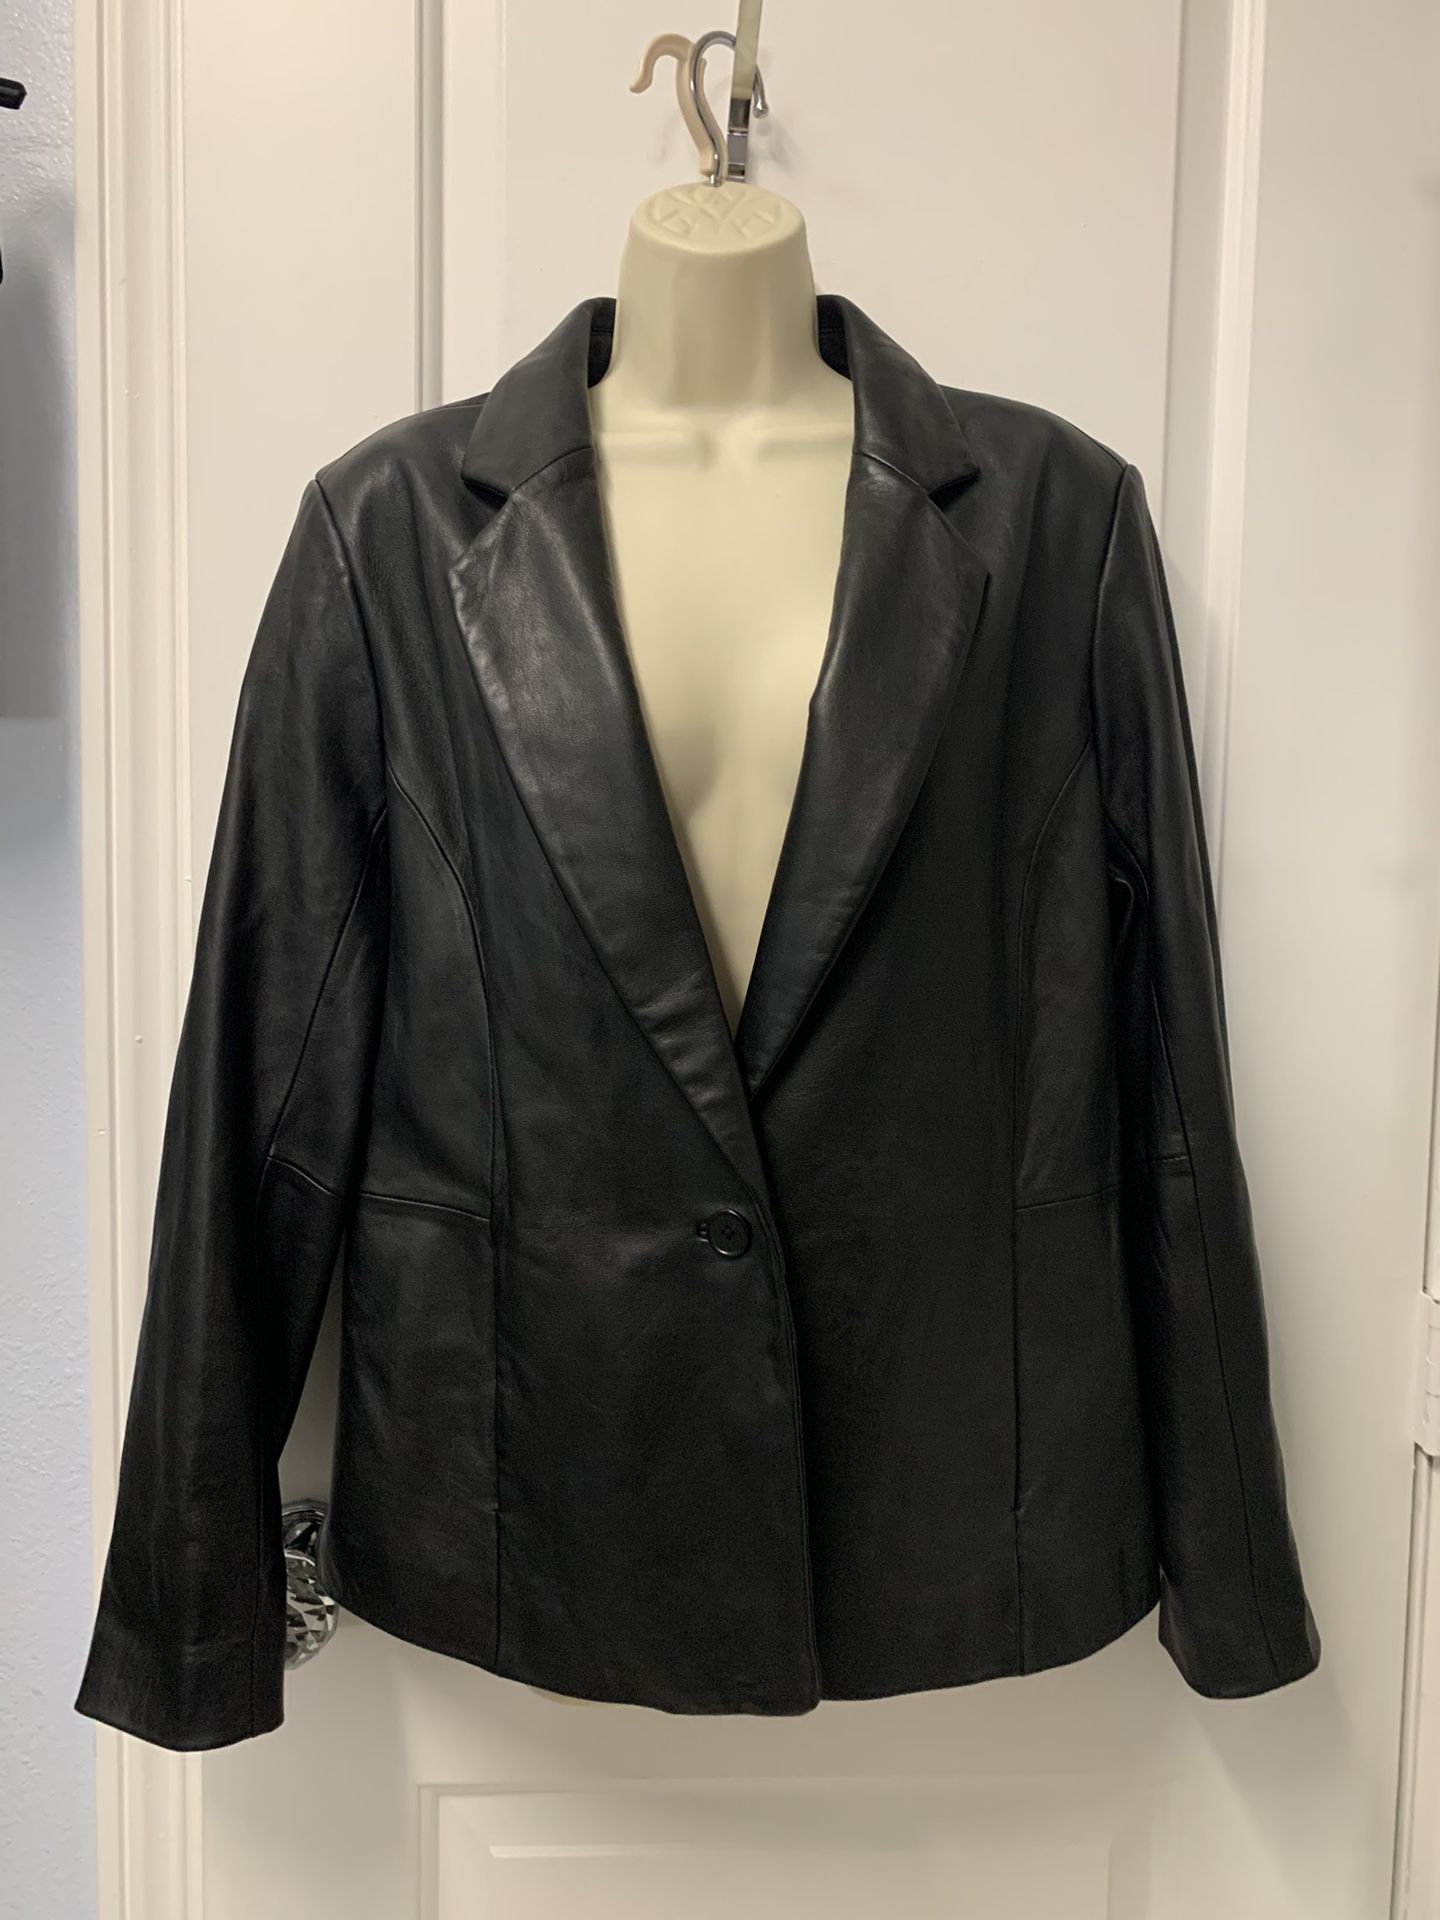 Adult Women Large Black Leather Jacket 